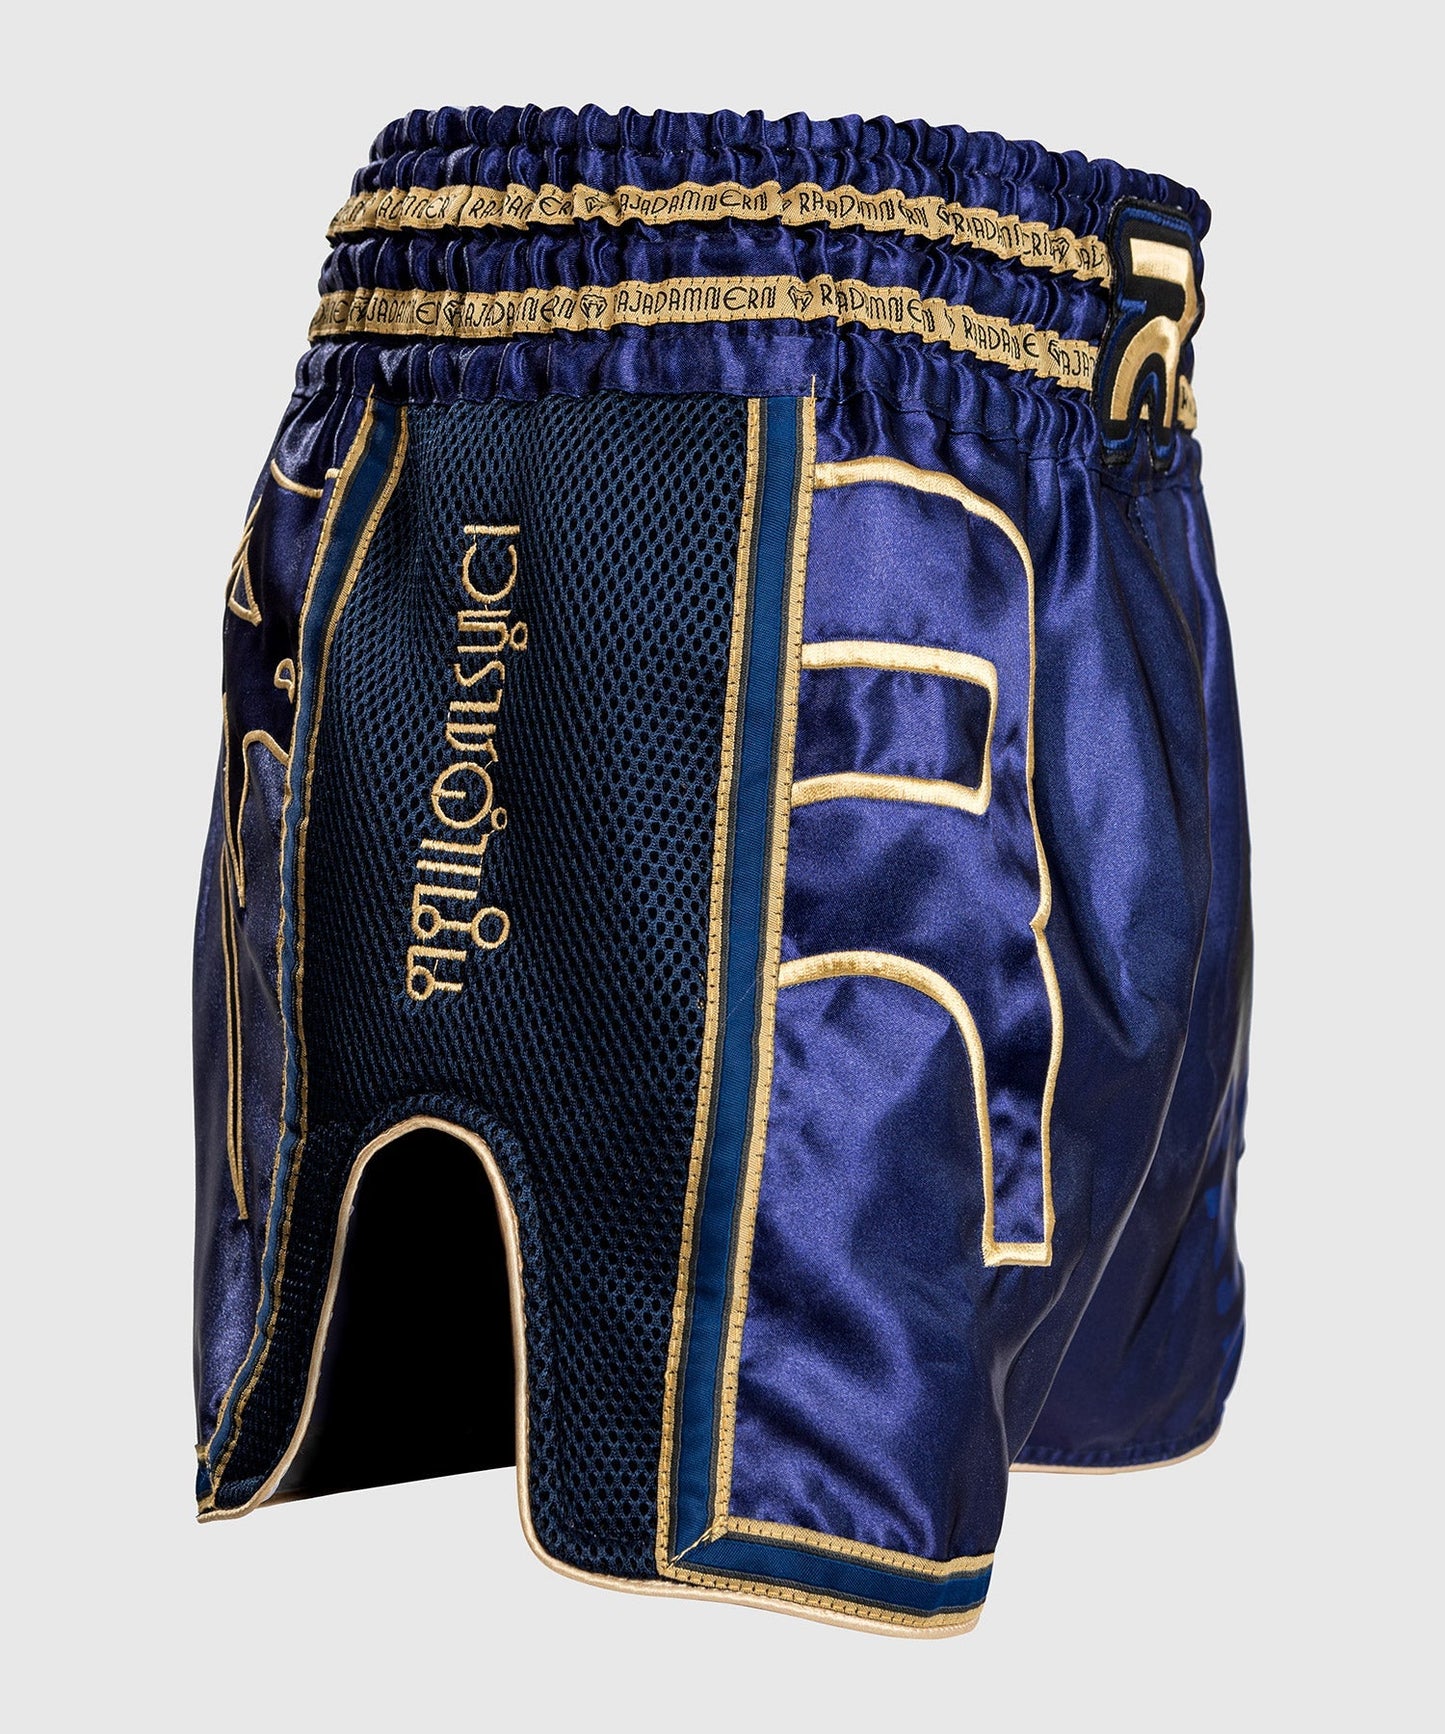 Venum RAJADAMNERN Muay Thai Shorts - Blau